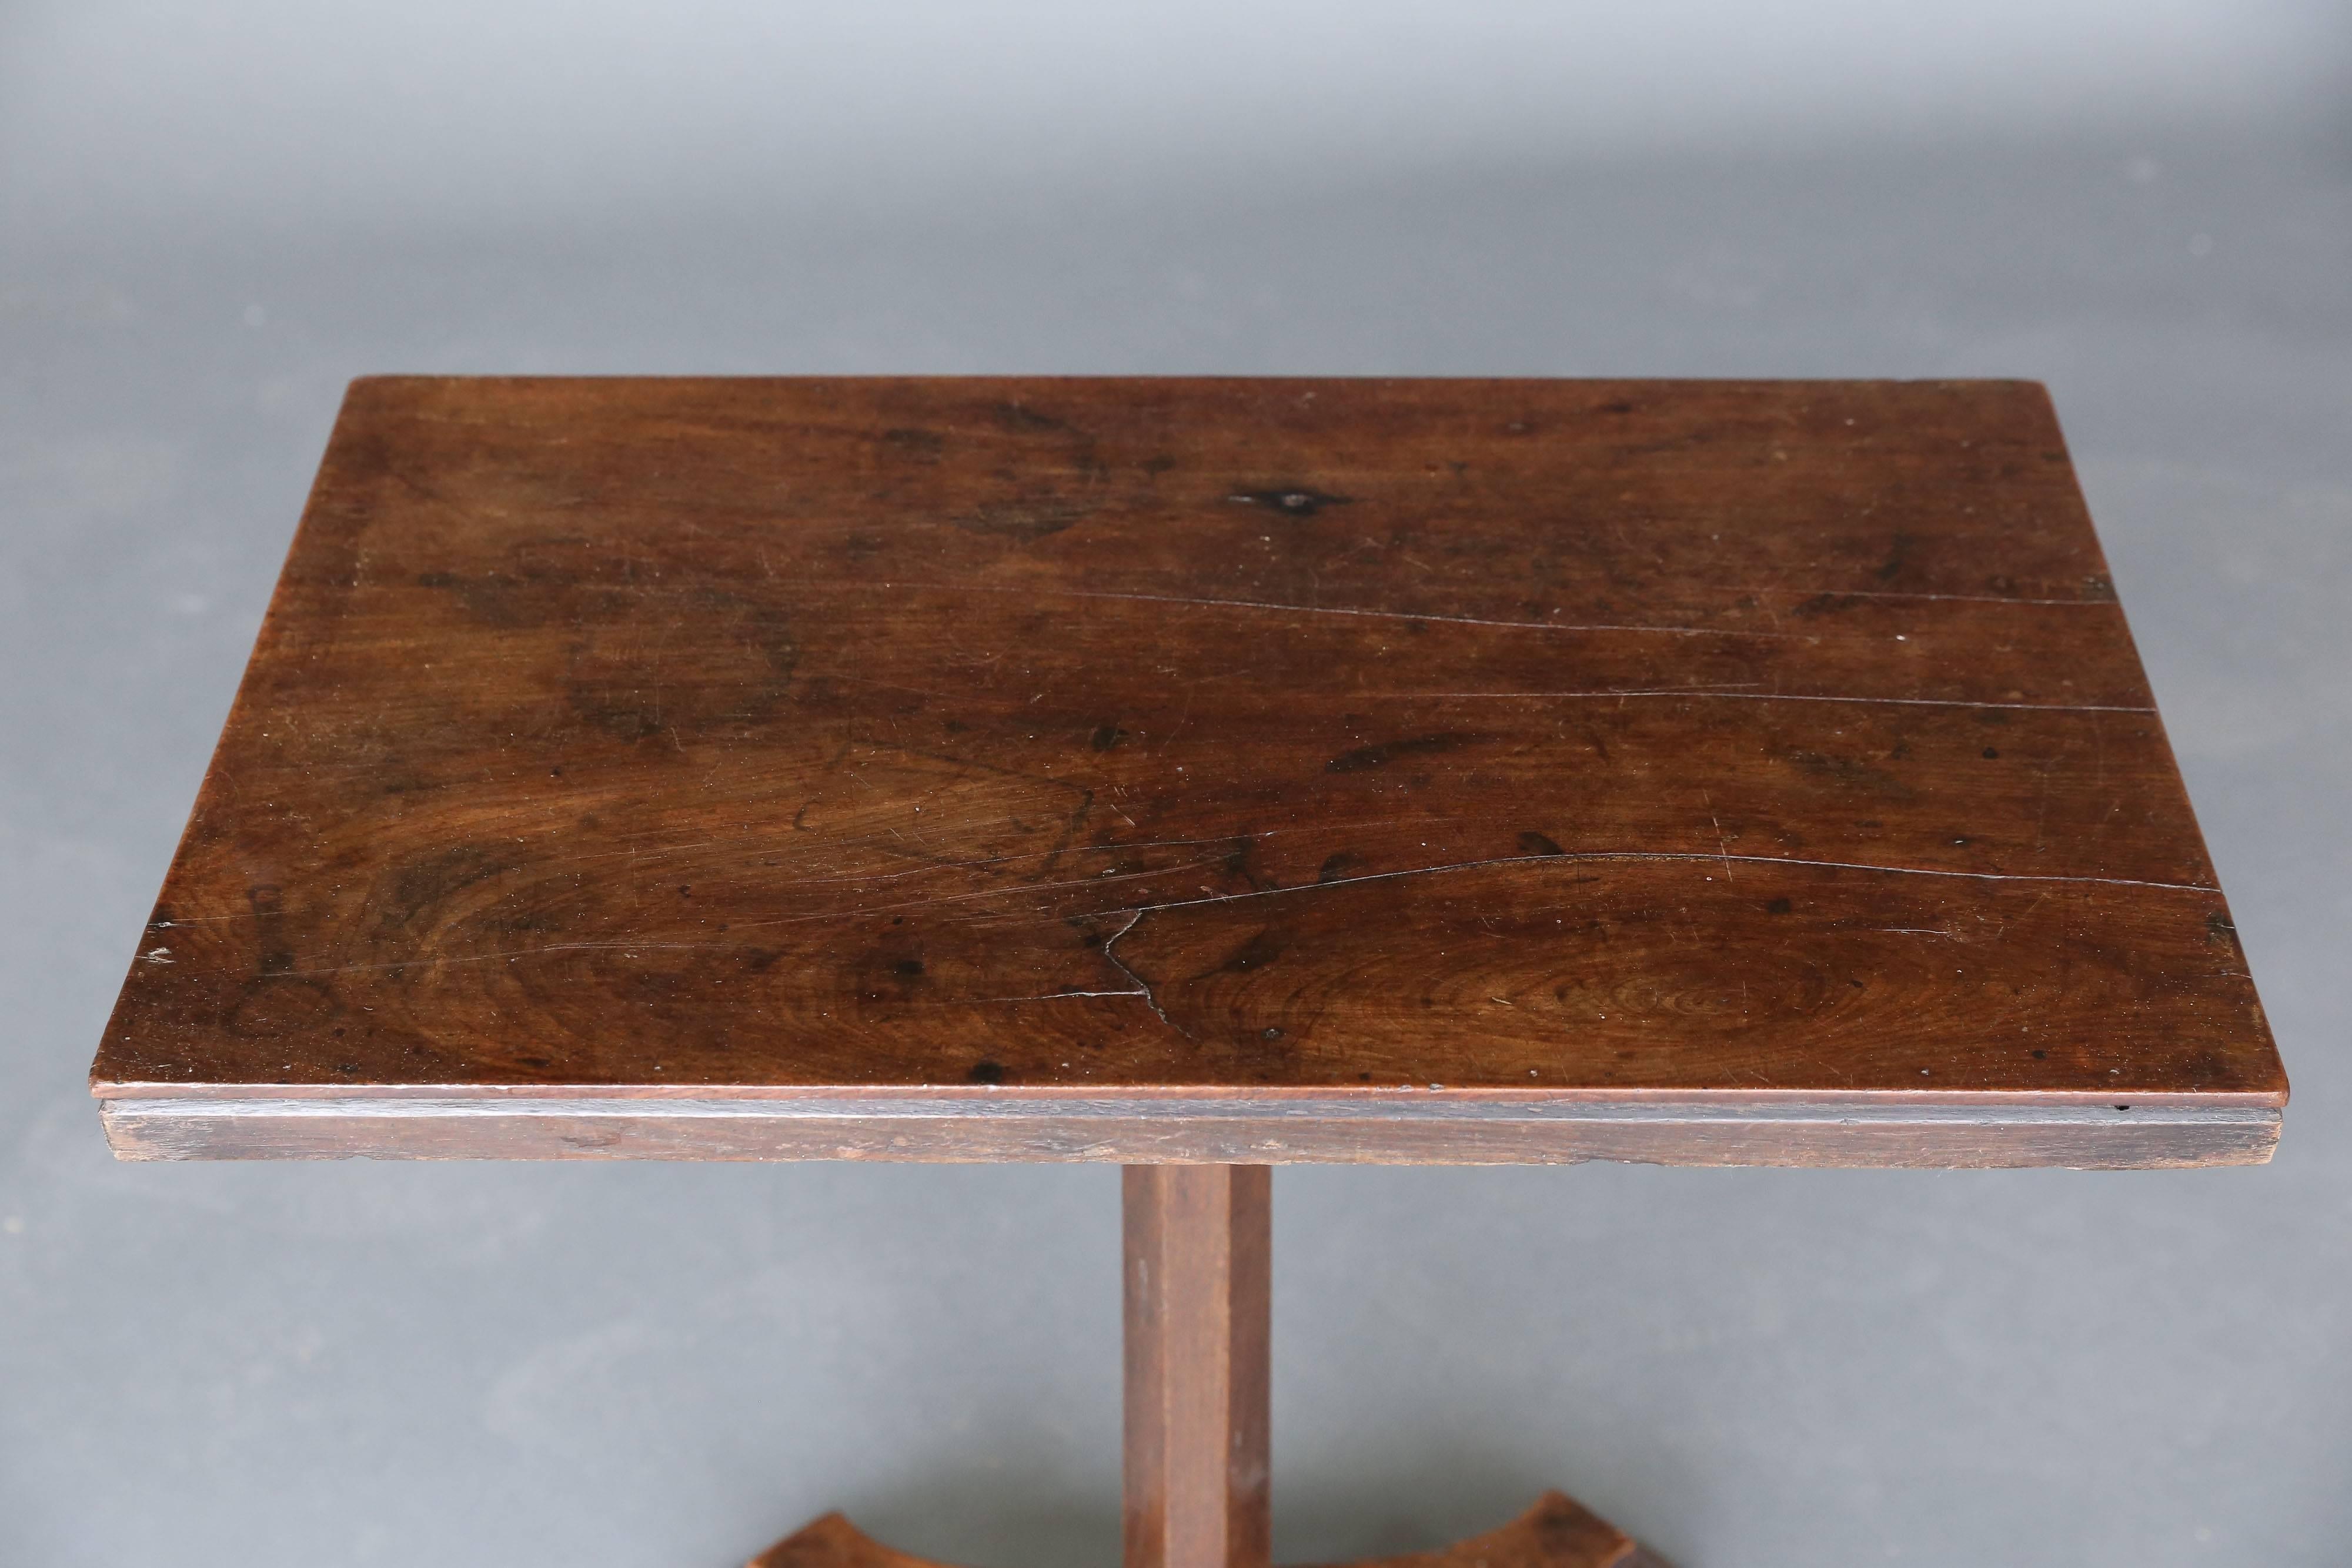 19th century narrow mahogany table with interesting base on 4 feet.